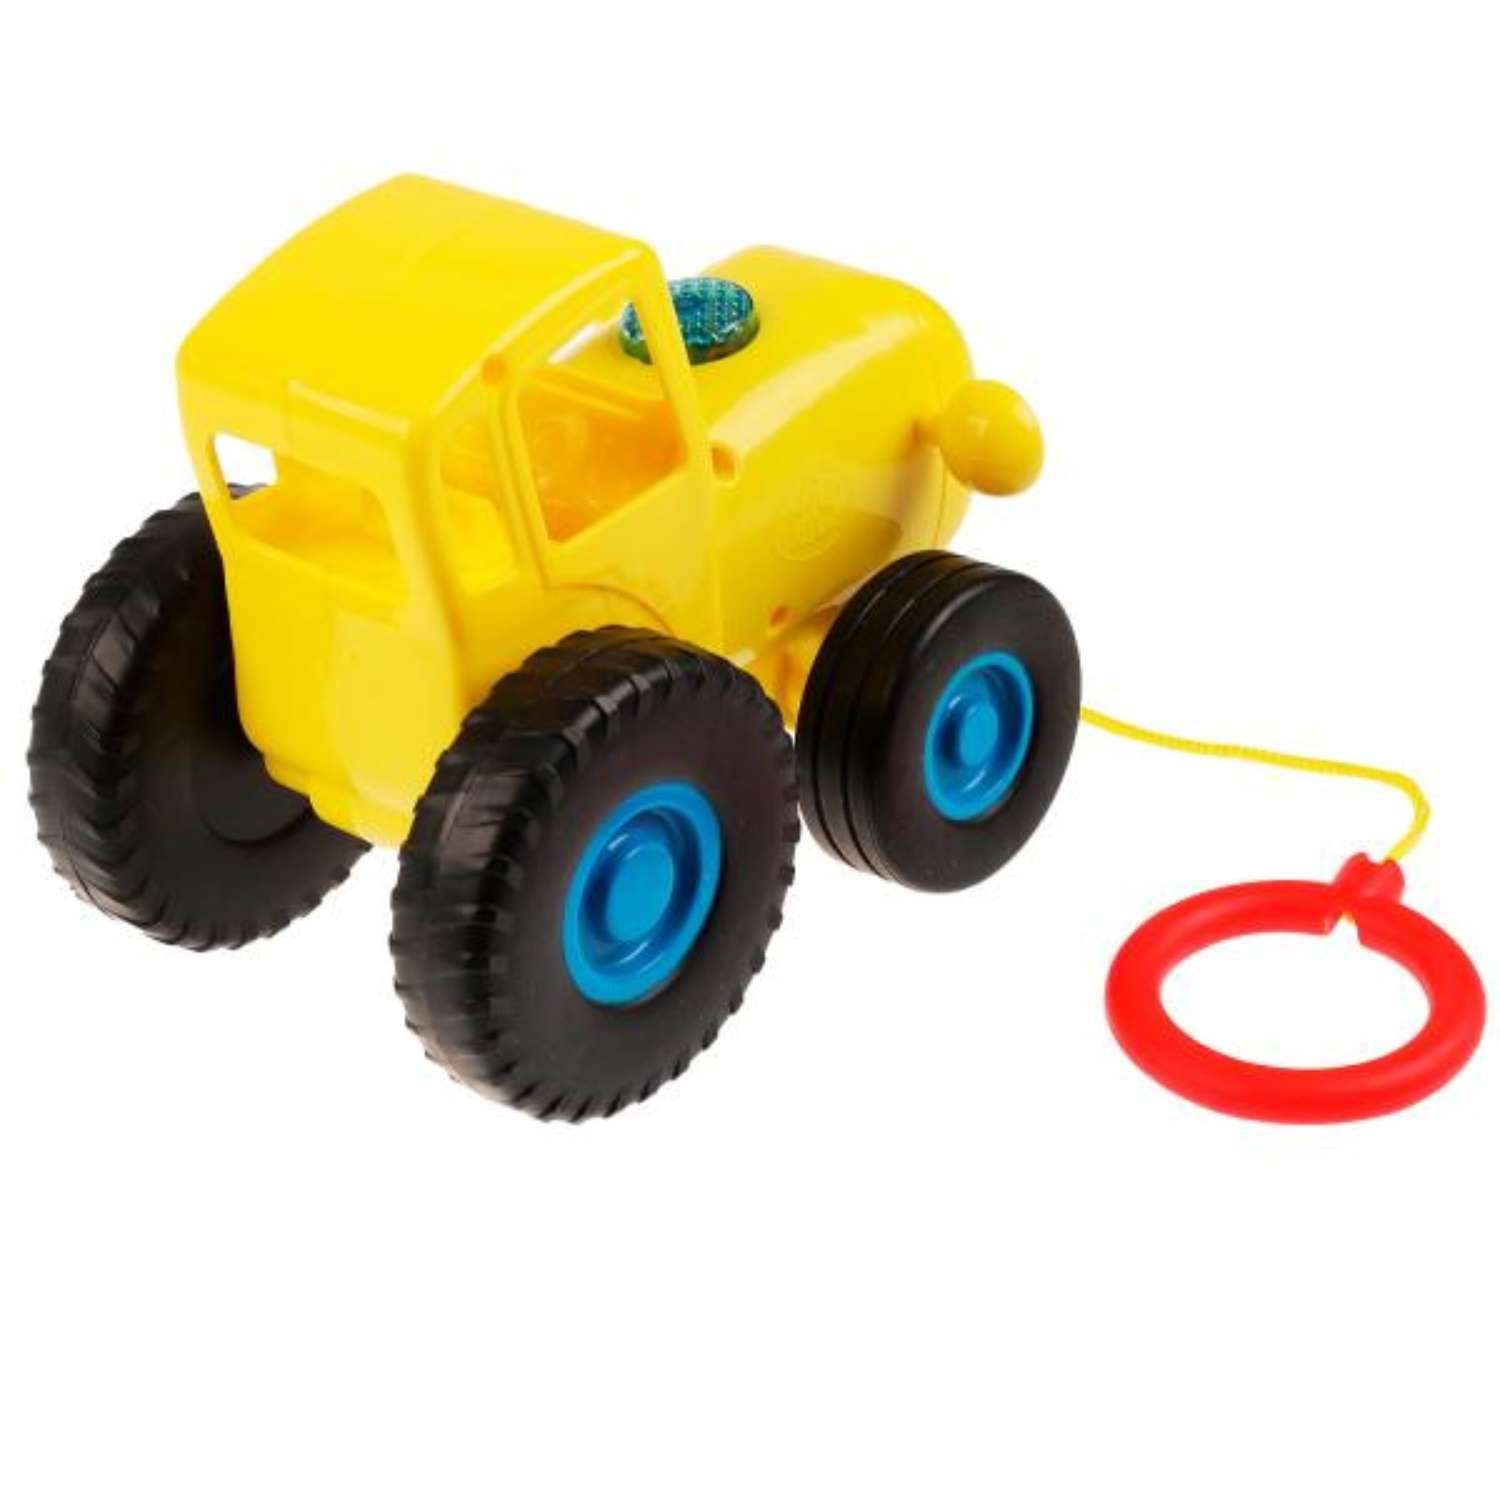 Музыкальная игрушка Zabiaka «Синий Трактор. Каталка» 30 песен загадок и звуков цвет желтый - фото 3